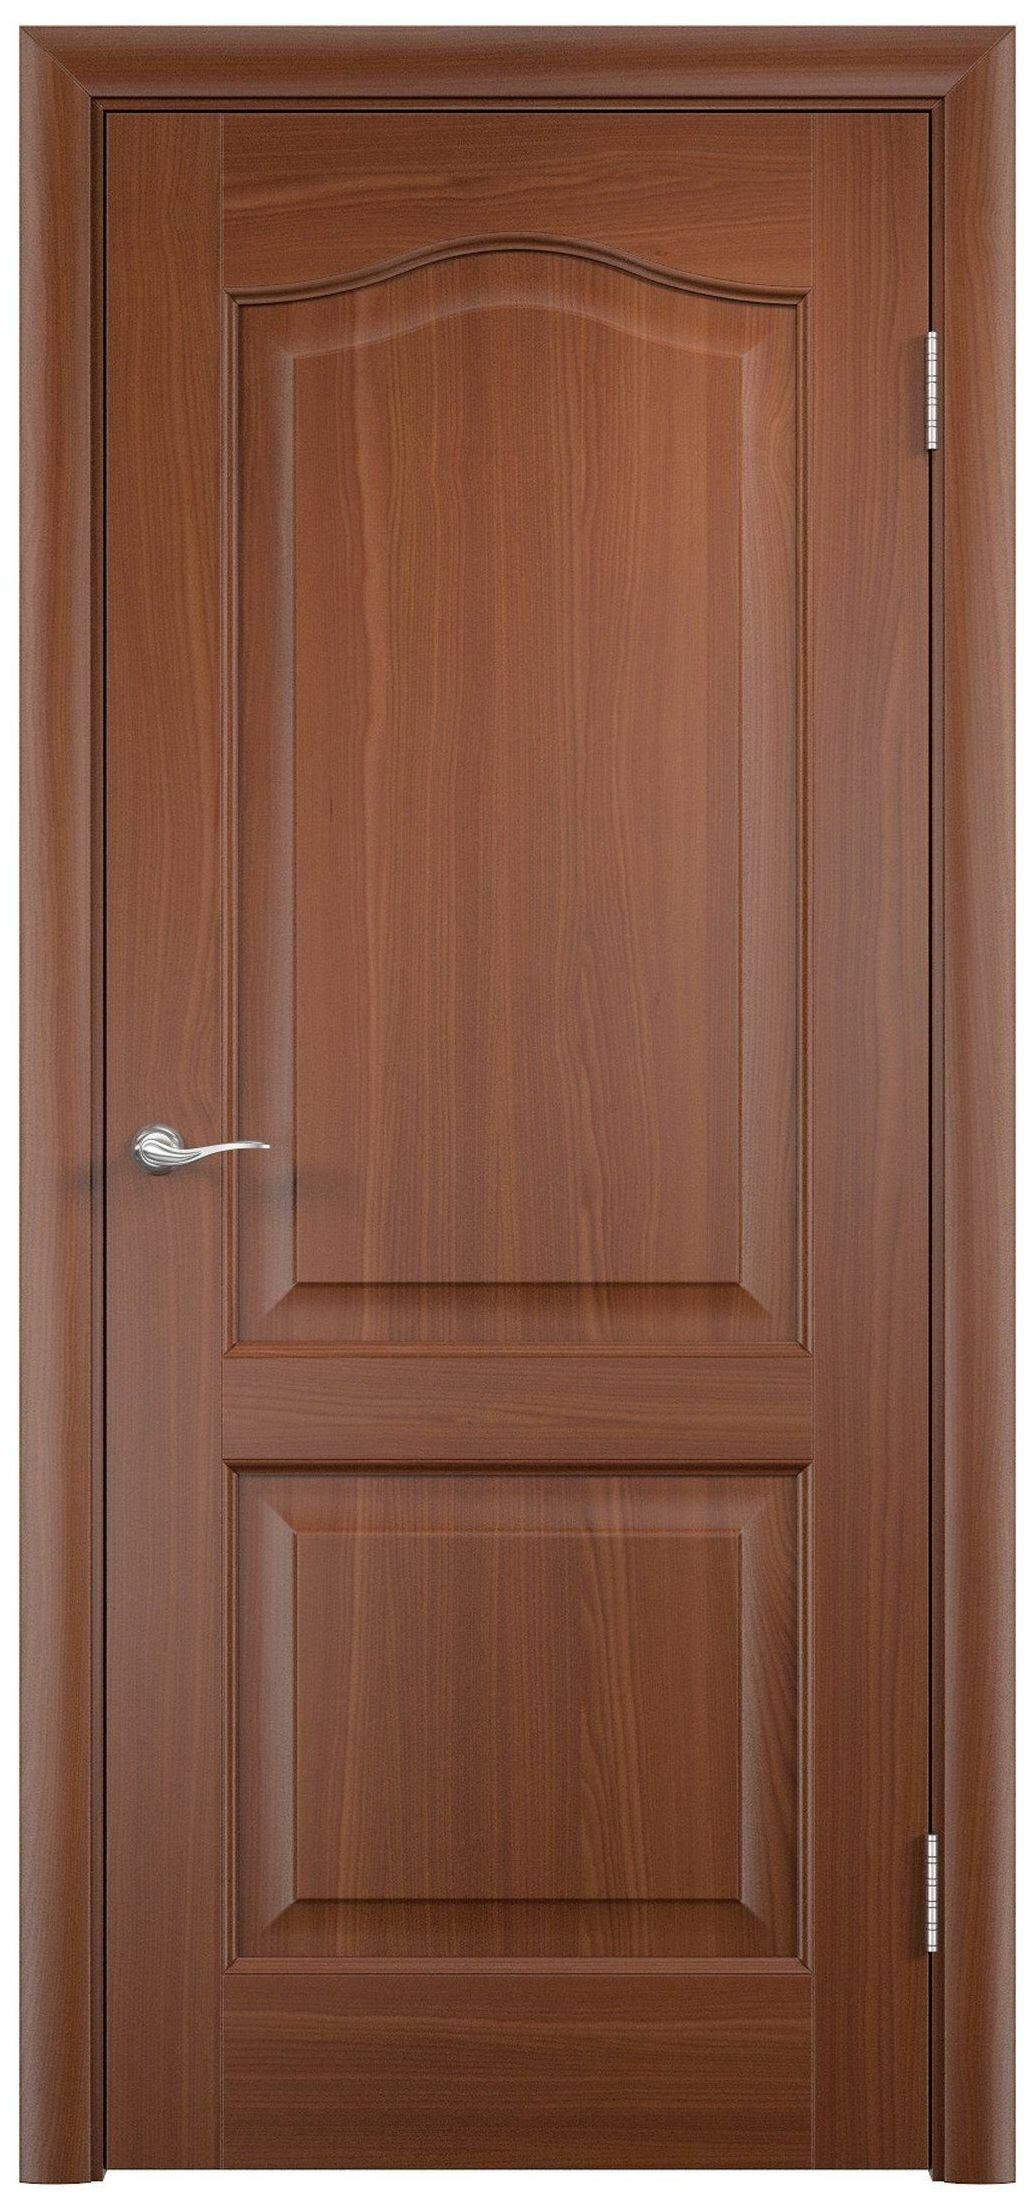 Межкомнатная дверь Палитра глухая Итальянский орех 60х200 cм